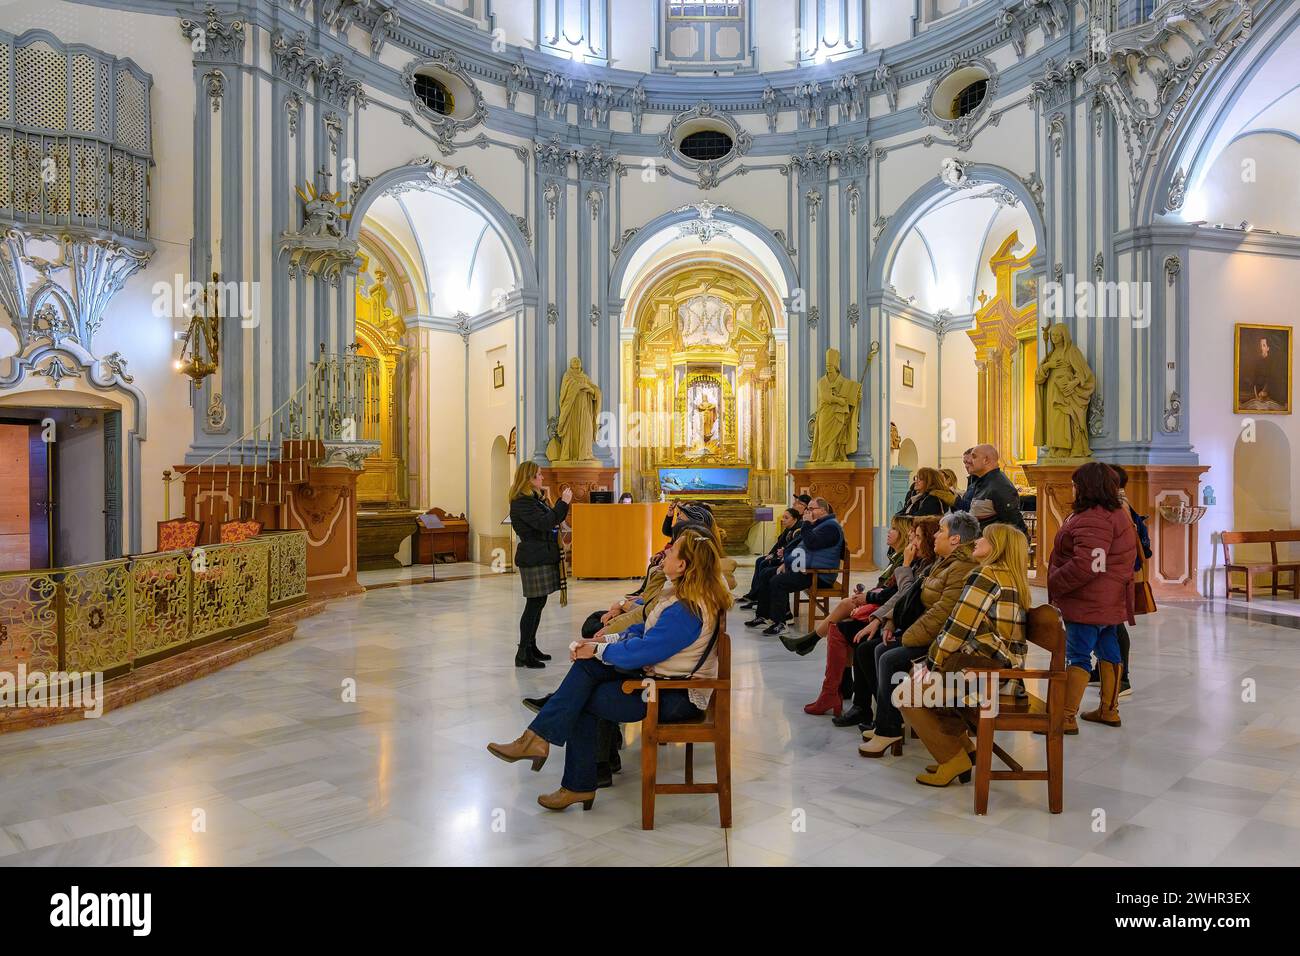 Un groupe de touristes assis dans des chaises et écoutant une explication de guide. Caractéristique architecturale intérieure de l'église du musée Saint Jean de Dieu Banque D'Images